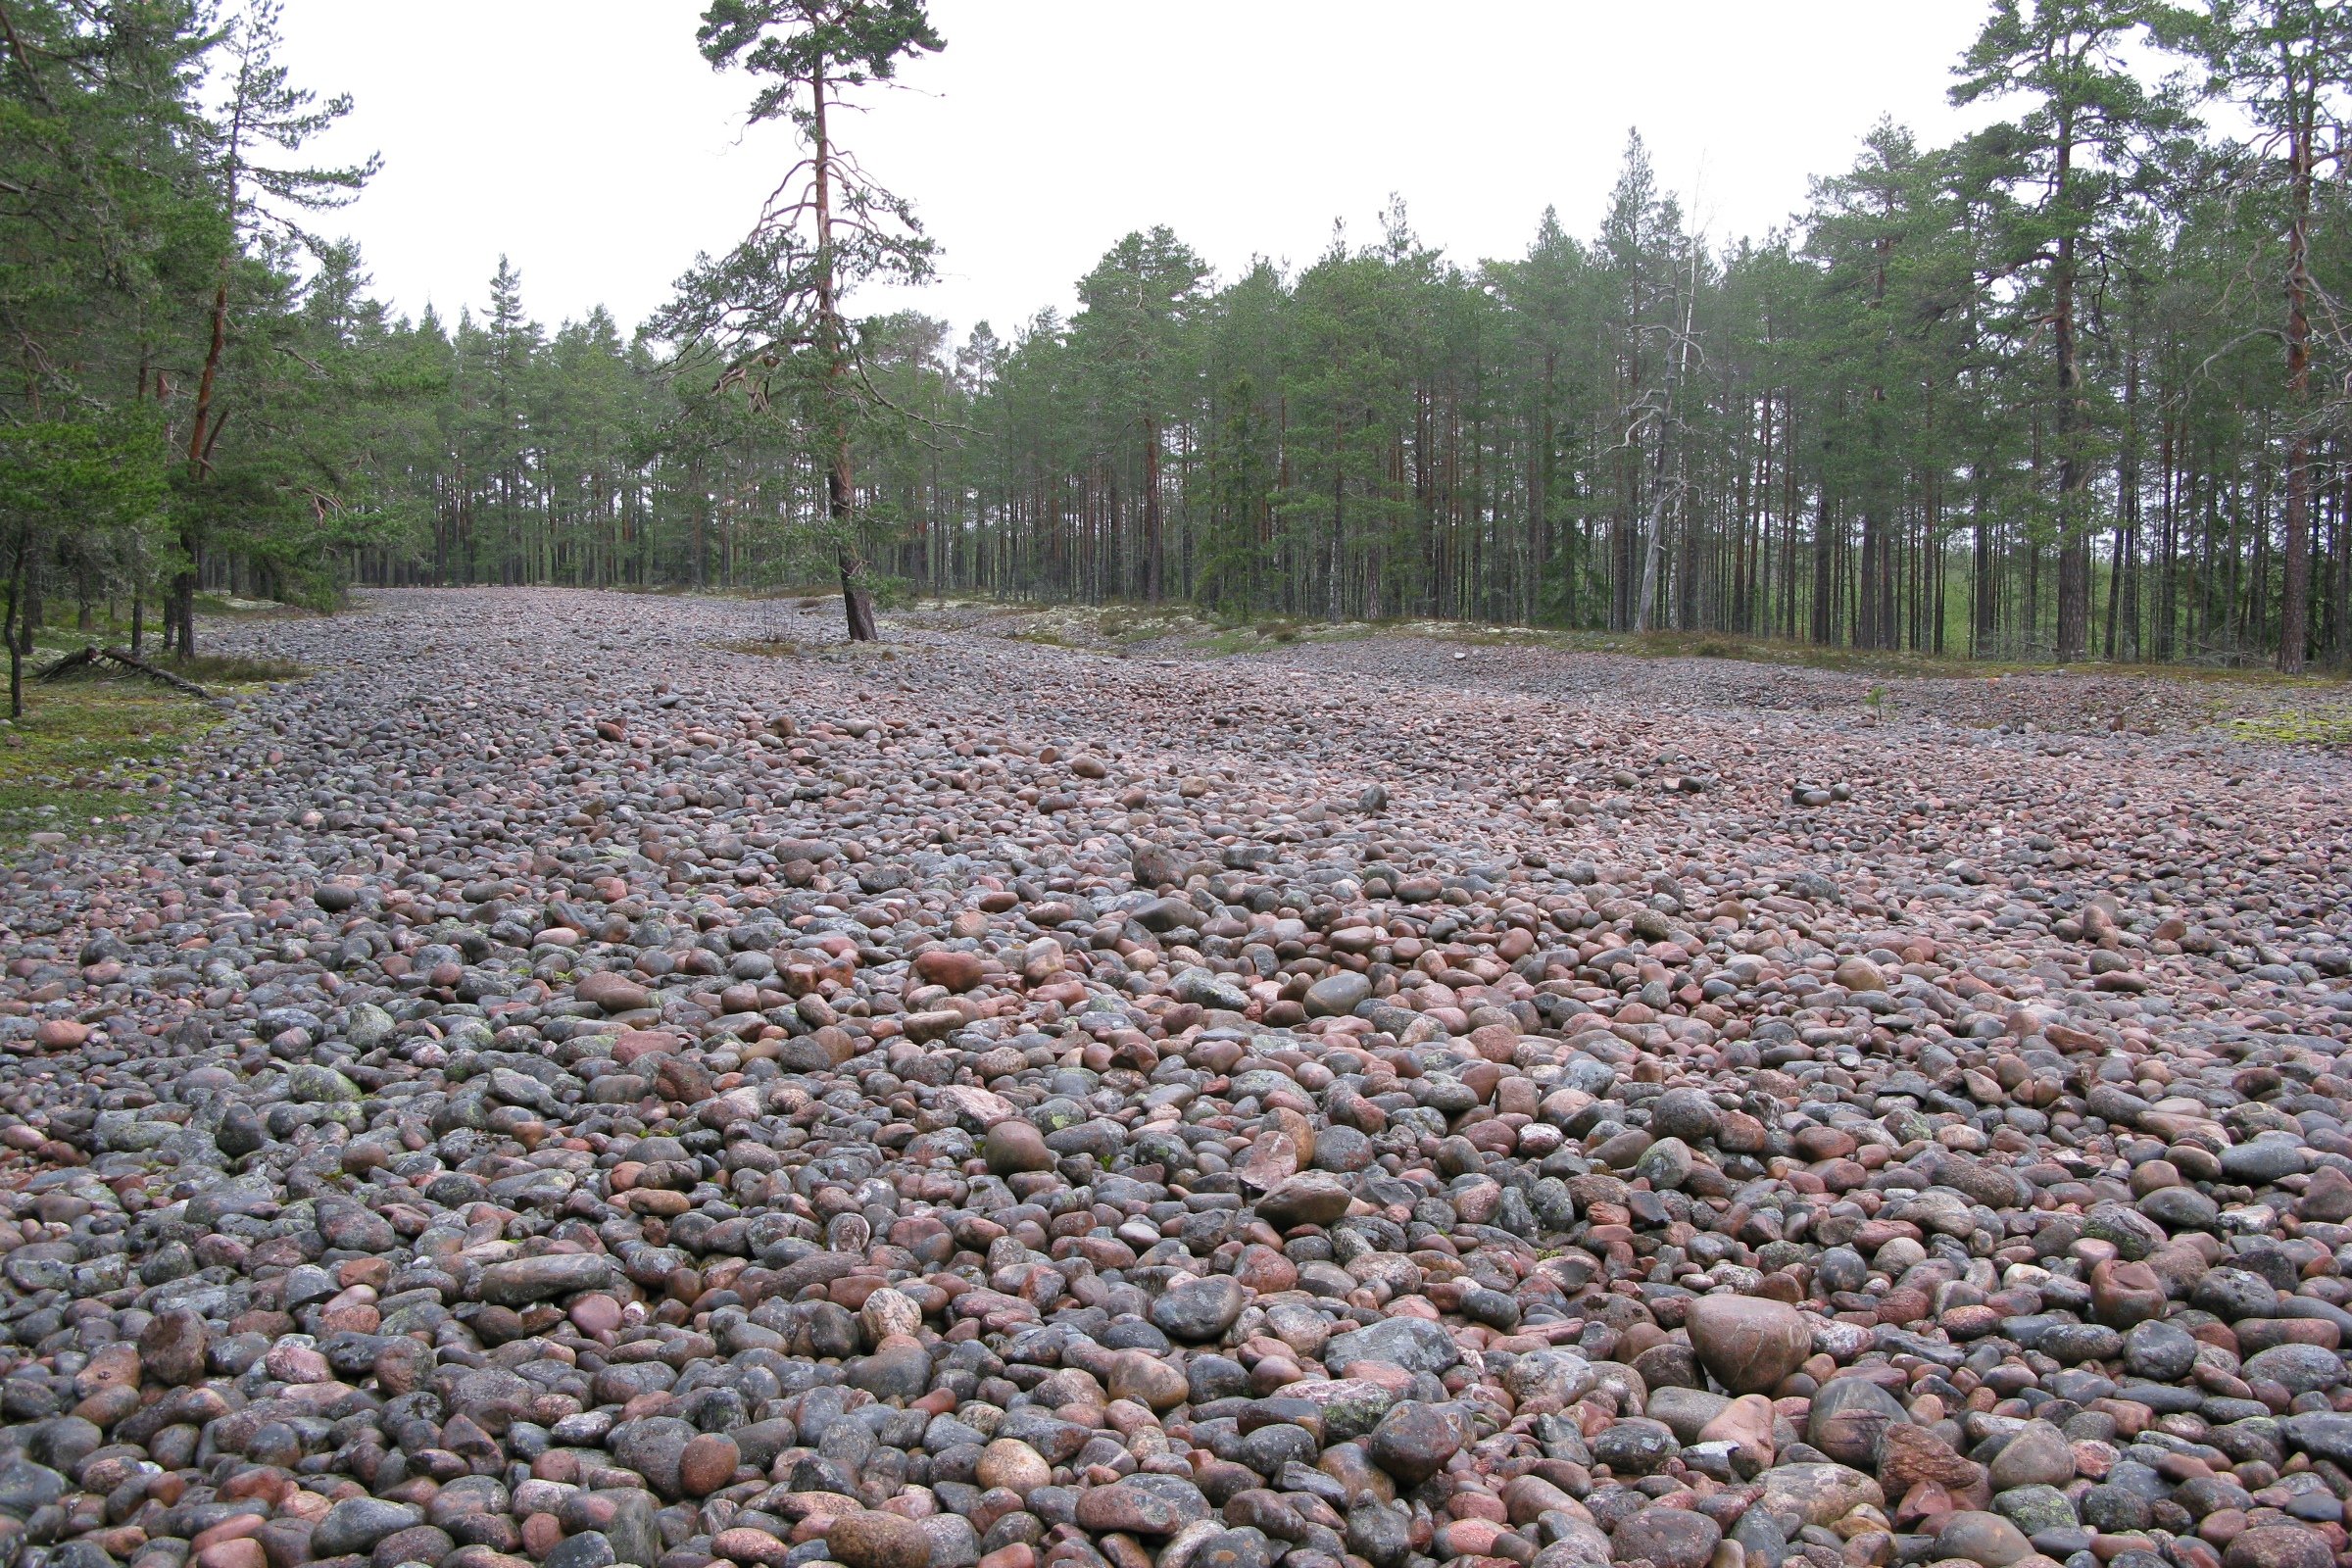 En stor öppen yta täckt av rundade stenar i olika storlekar. Stentorget är omringat av barrträd.